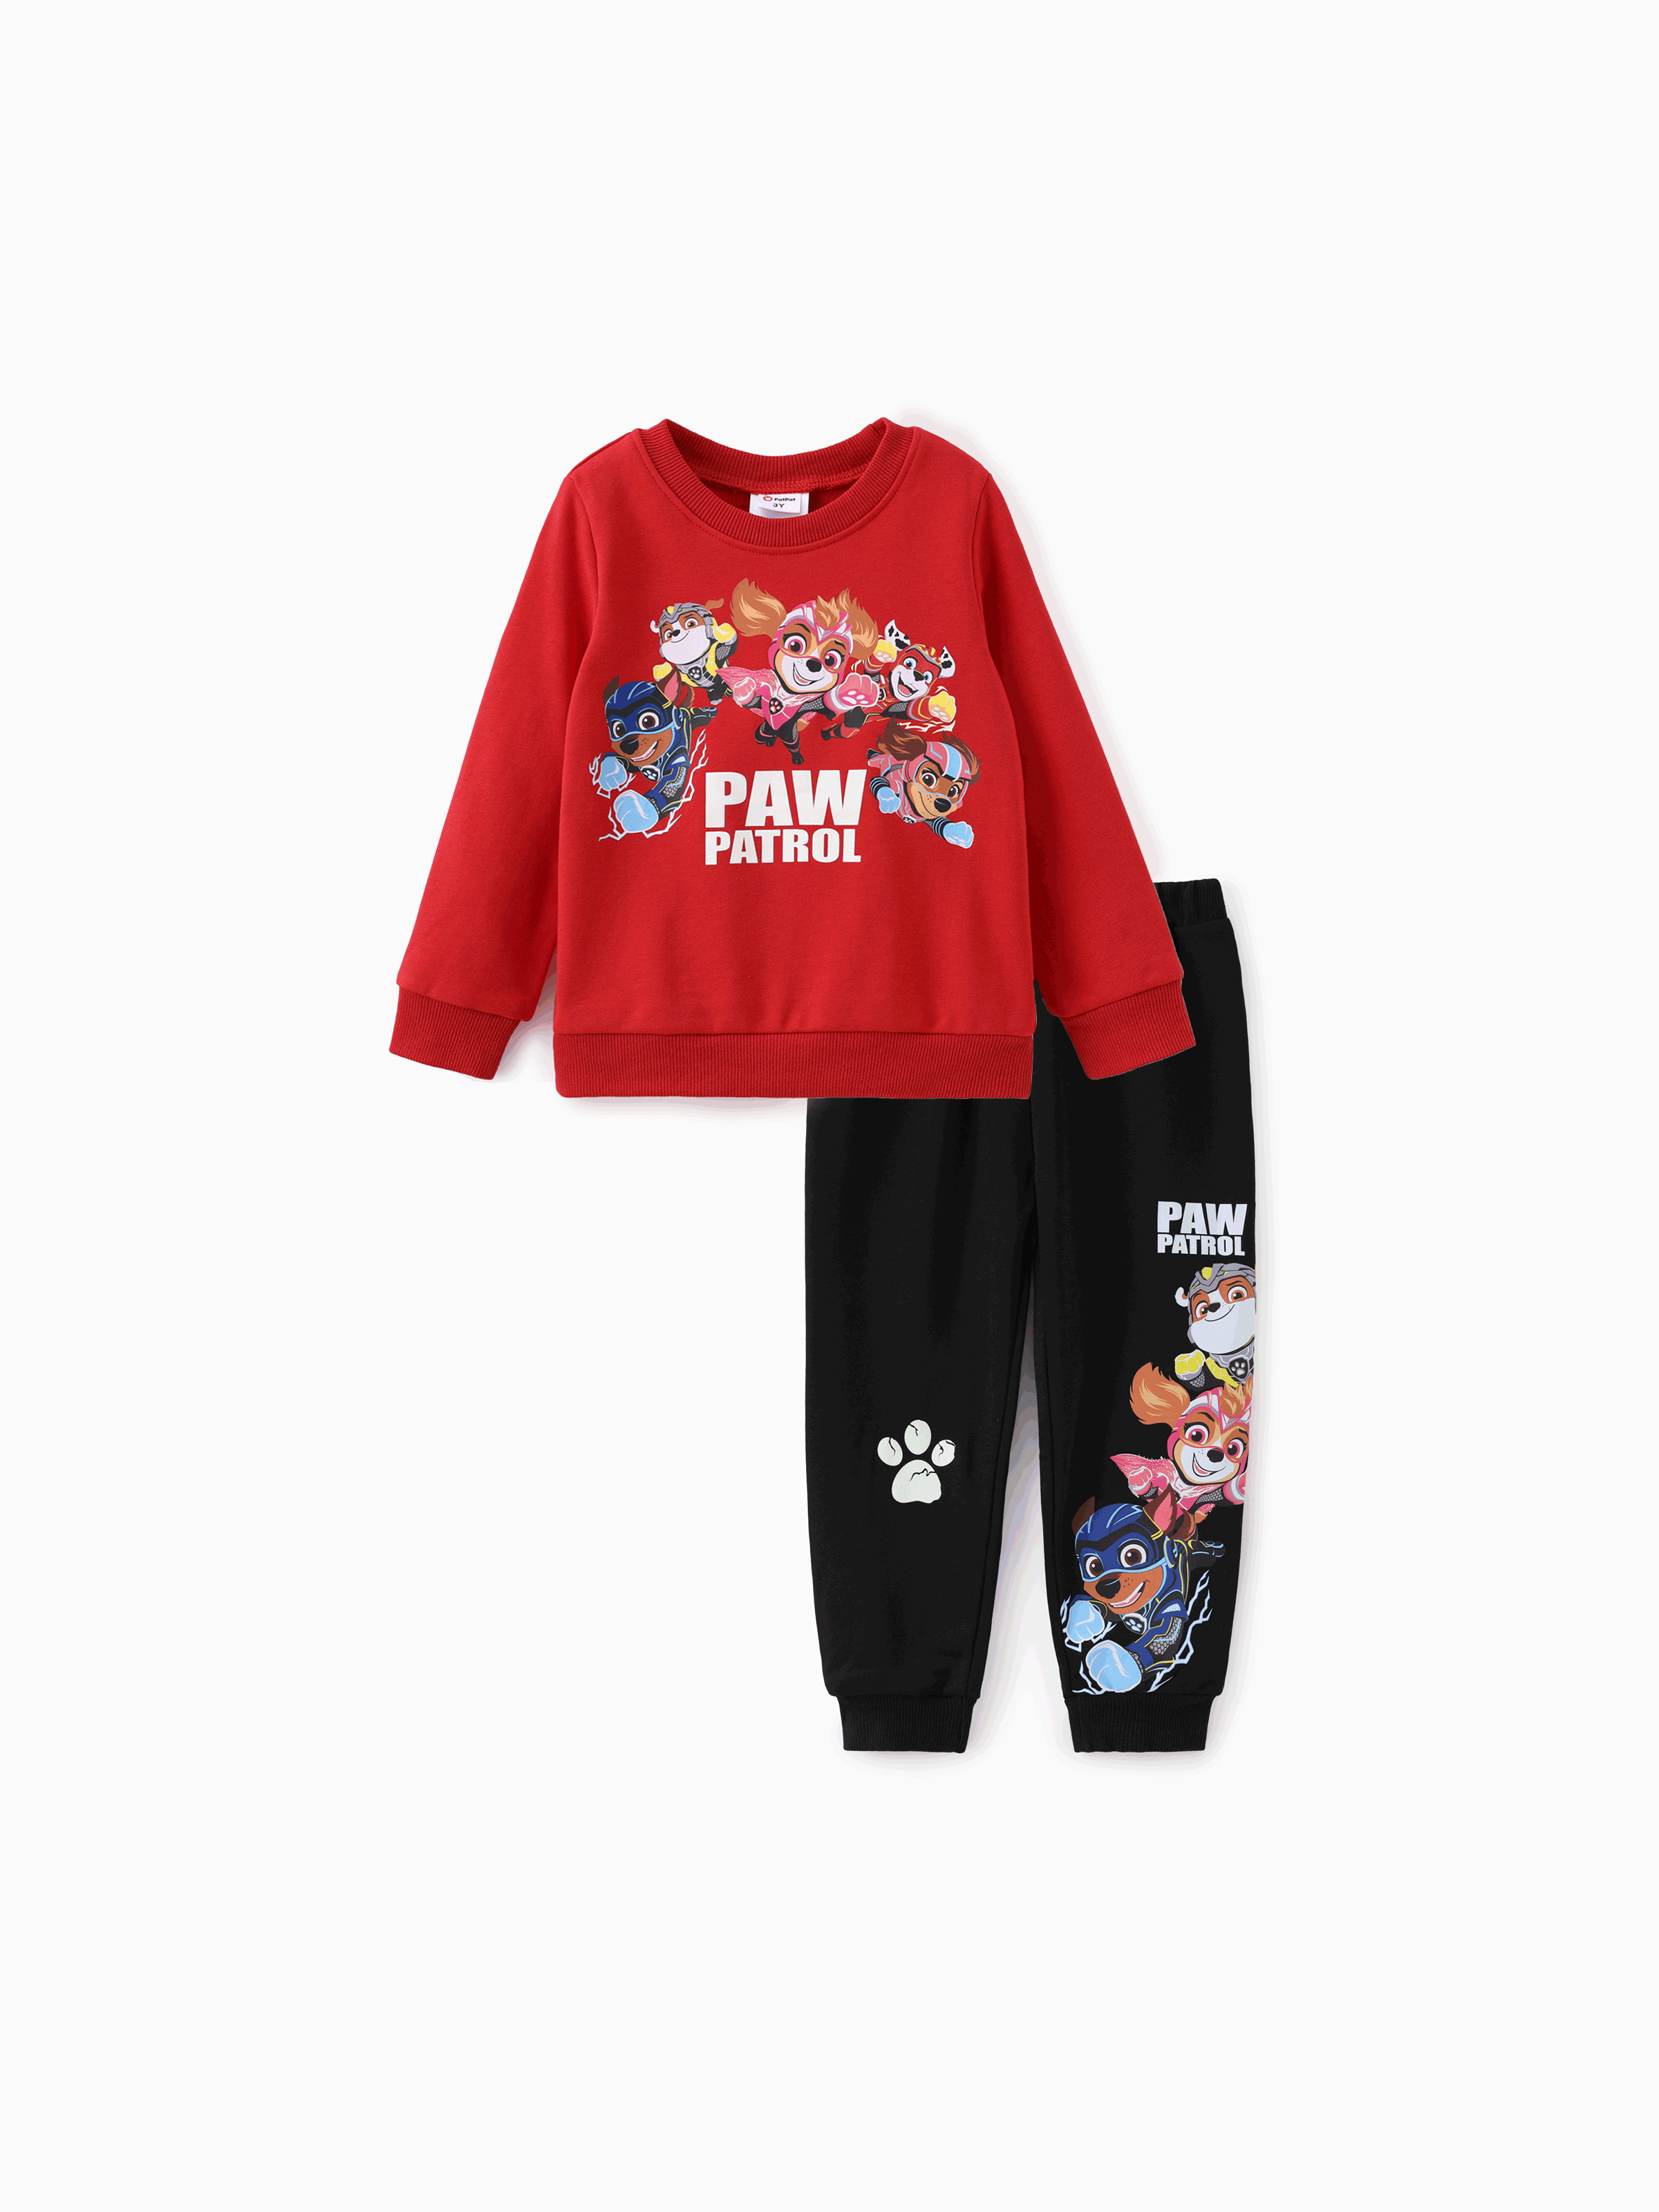 

Paw Patrol Toddler Boys/Girls 2pcs Glow in the Dark Sweatshirt and Pants Set